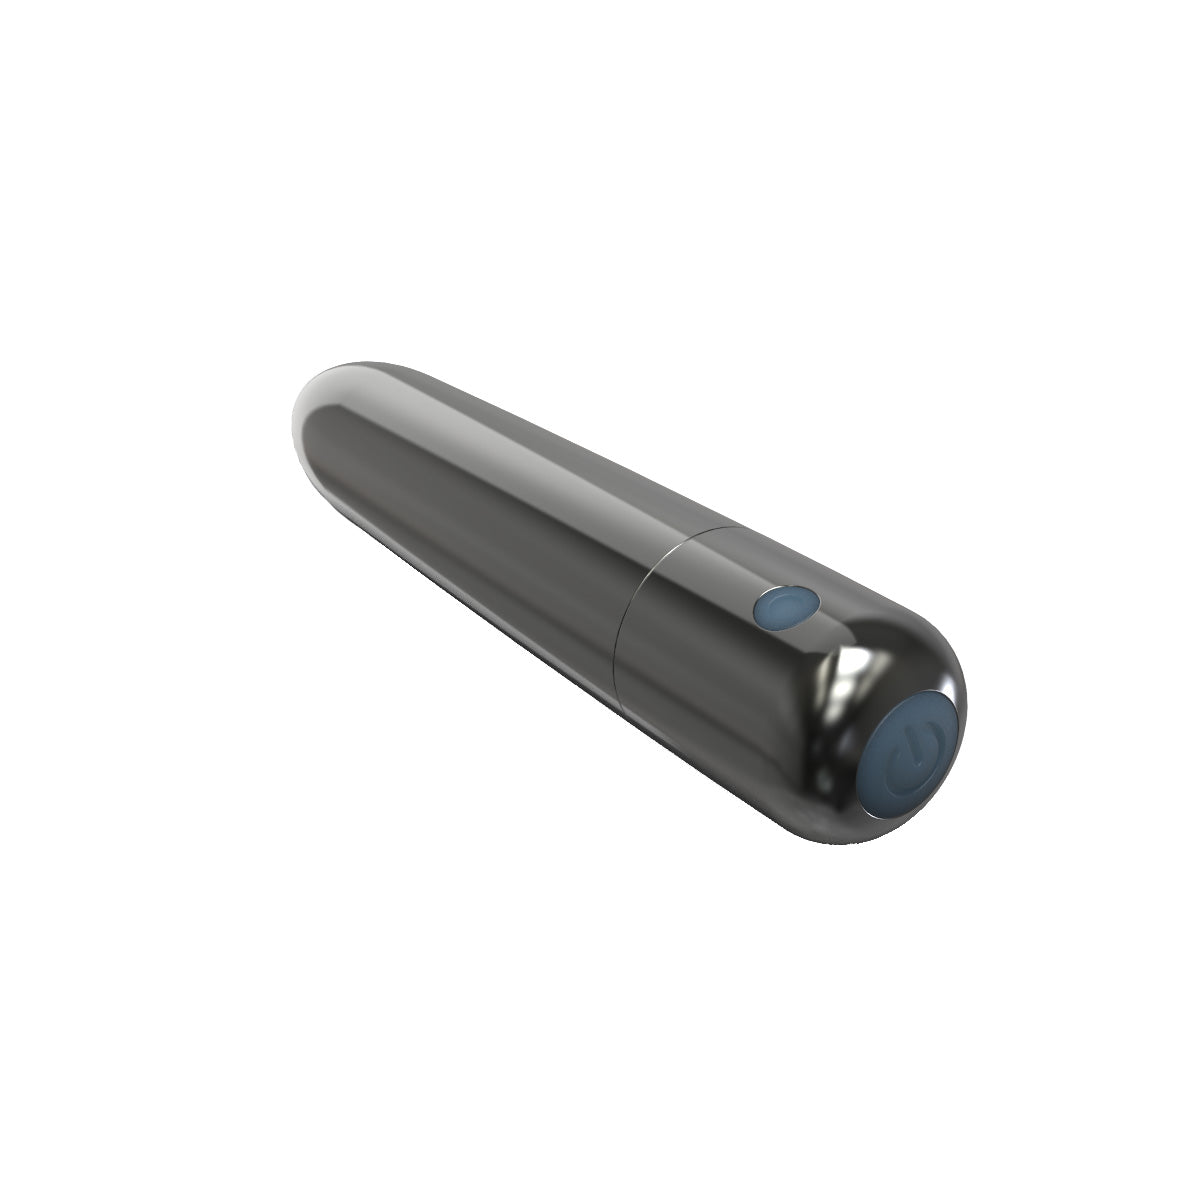 PowerBullet Bullet Point – Bullet Vibrator – USB Rechargeable – Black